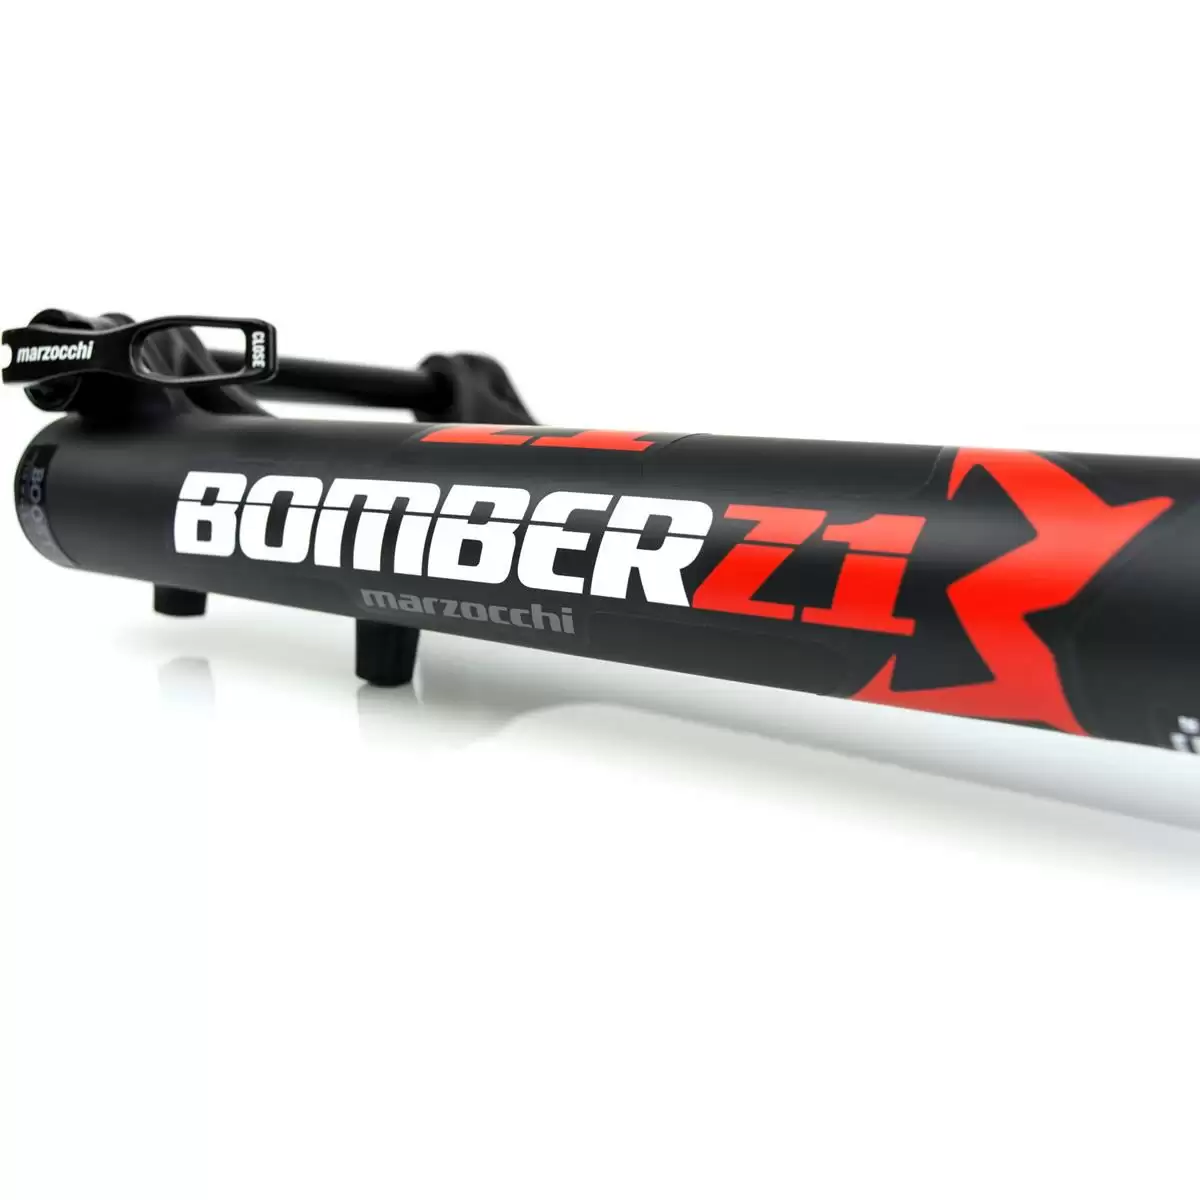 Bomber Z1 Coil horquilla 27.5'' 170mm 15x110 boost Offset 44mm negro Mod. 2022 #4